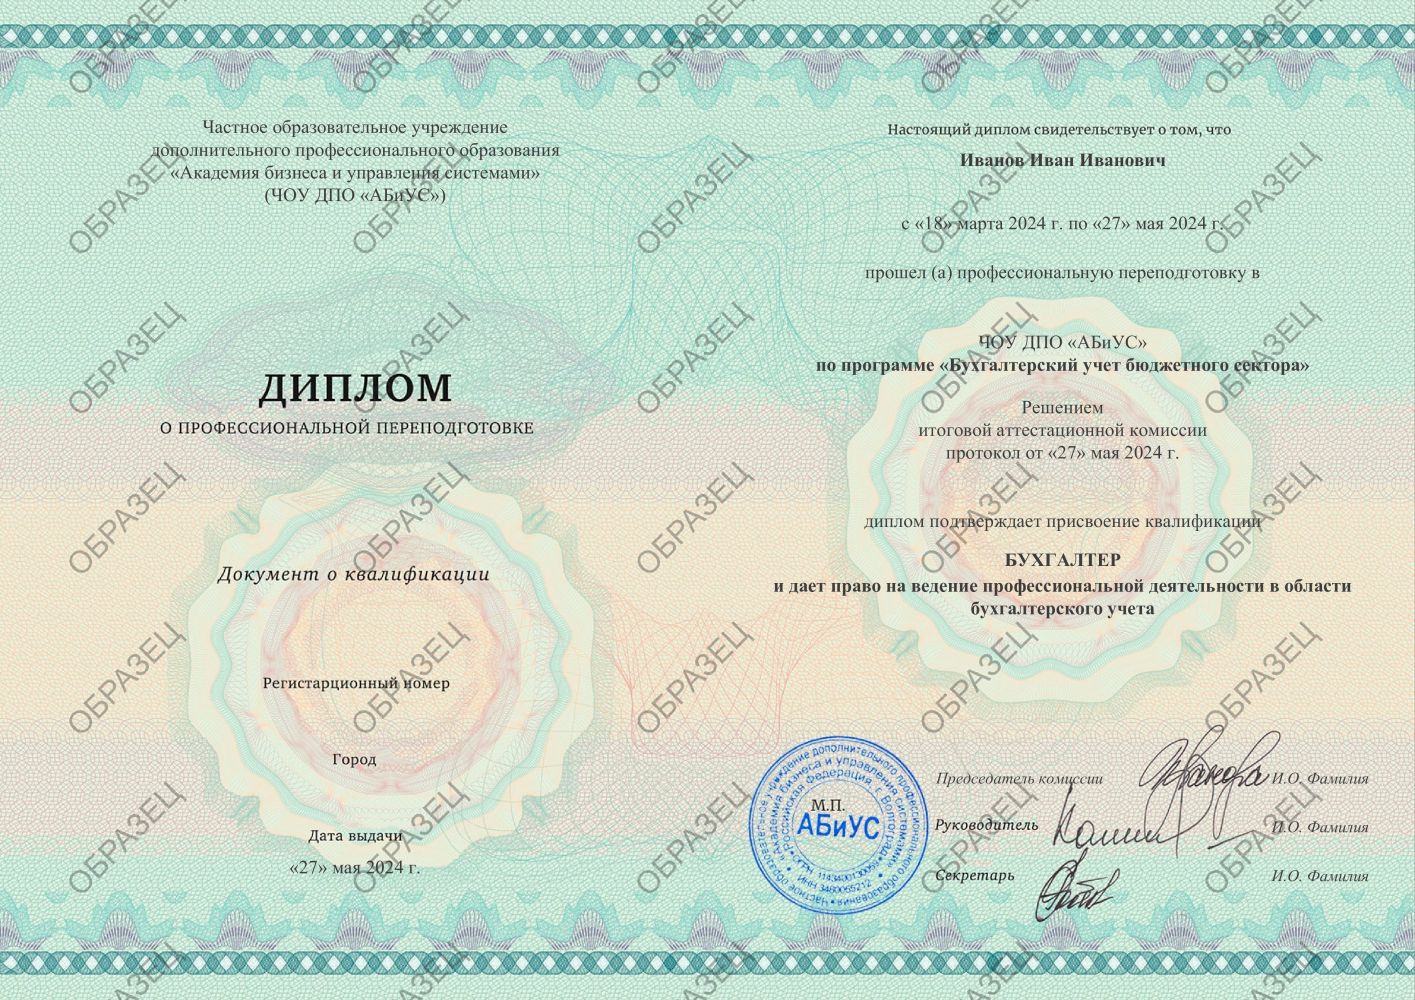 Диплом Бухгалтерский учет бюджетного сектора 300 часов 18750 руб.